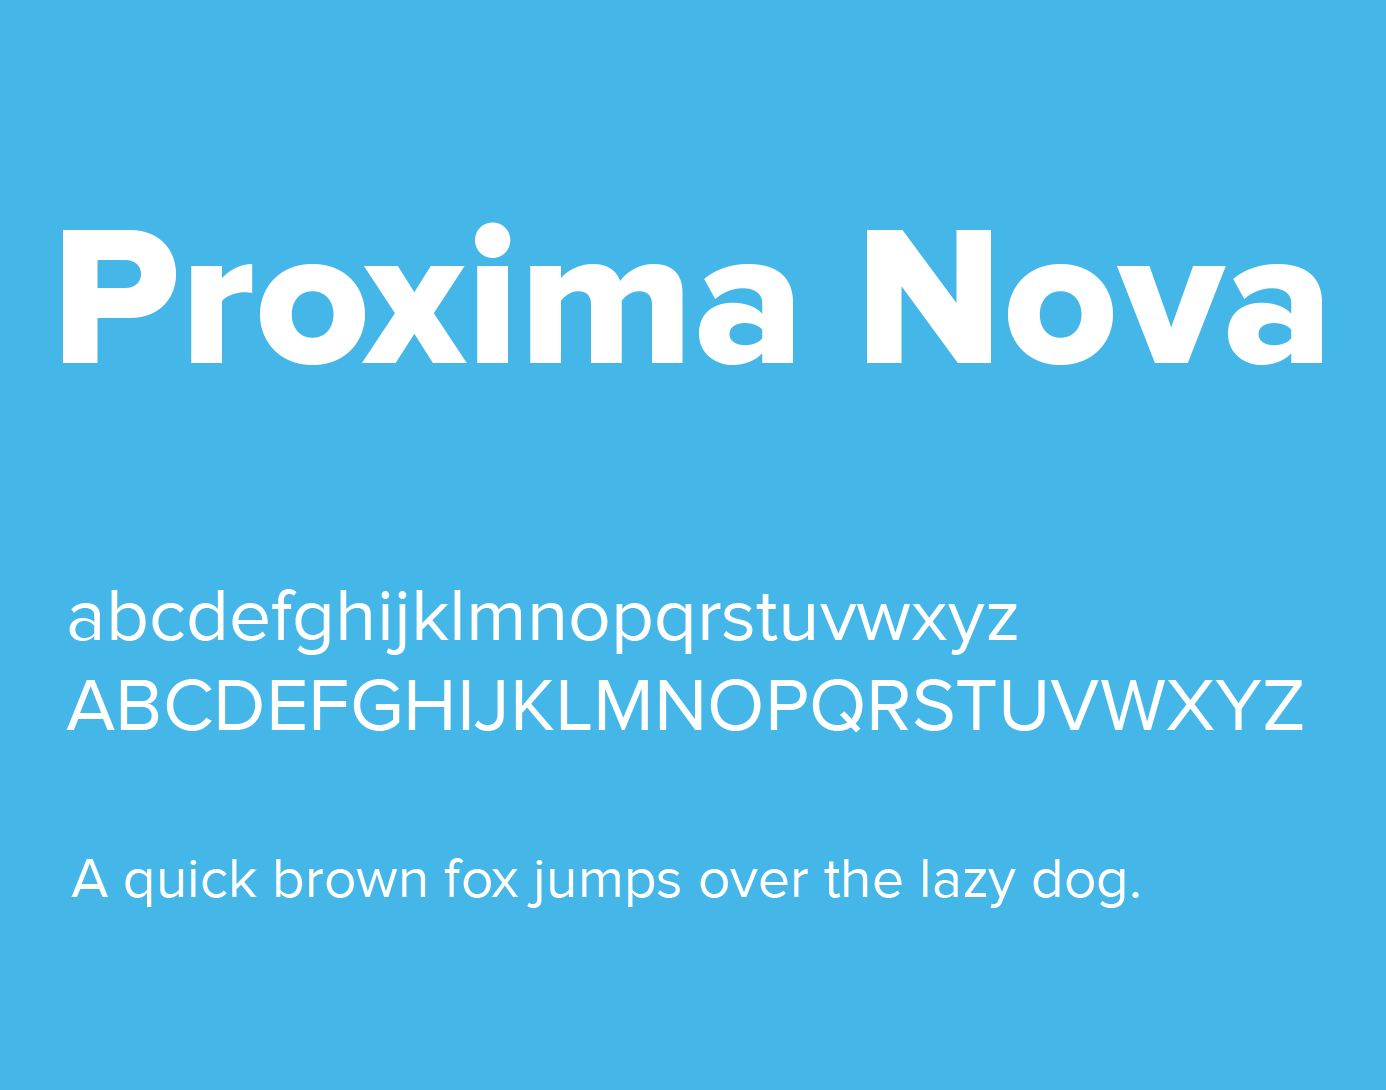 proxima nova free download